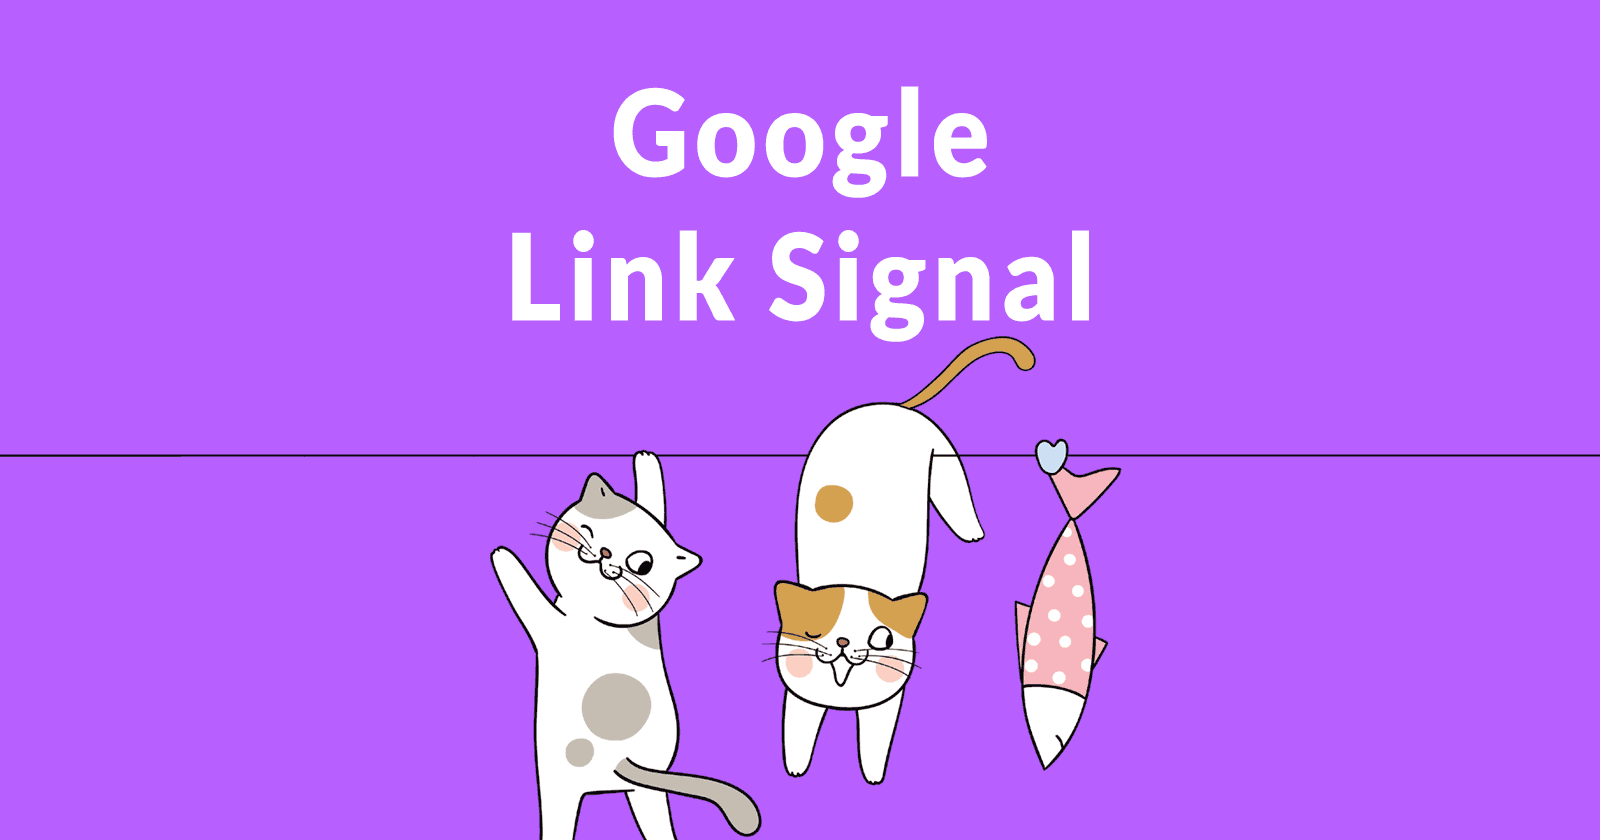 Google nofollow link signal